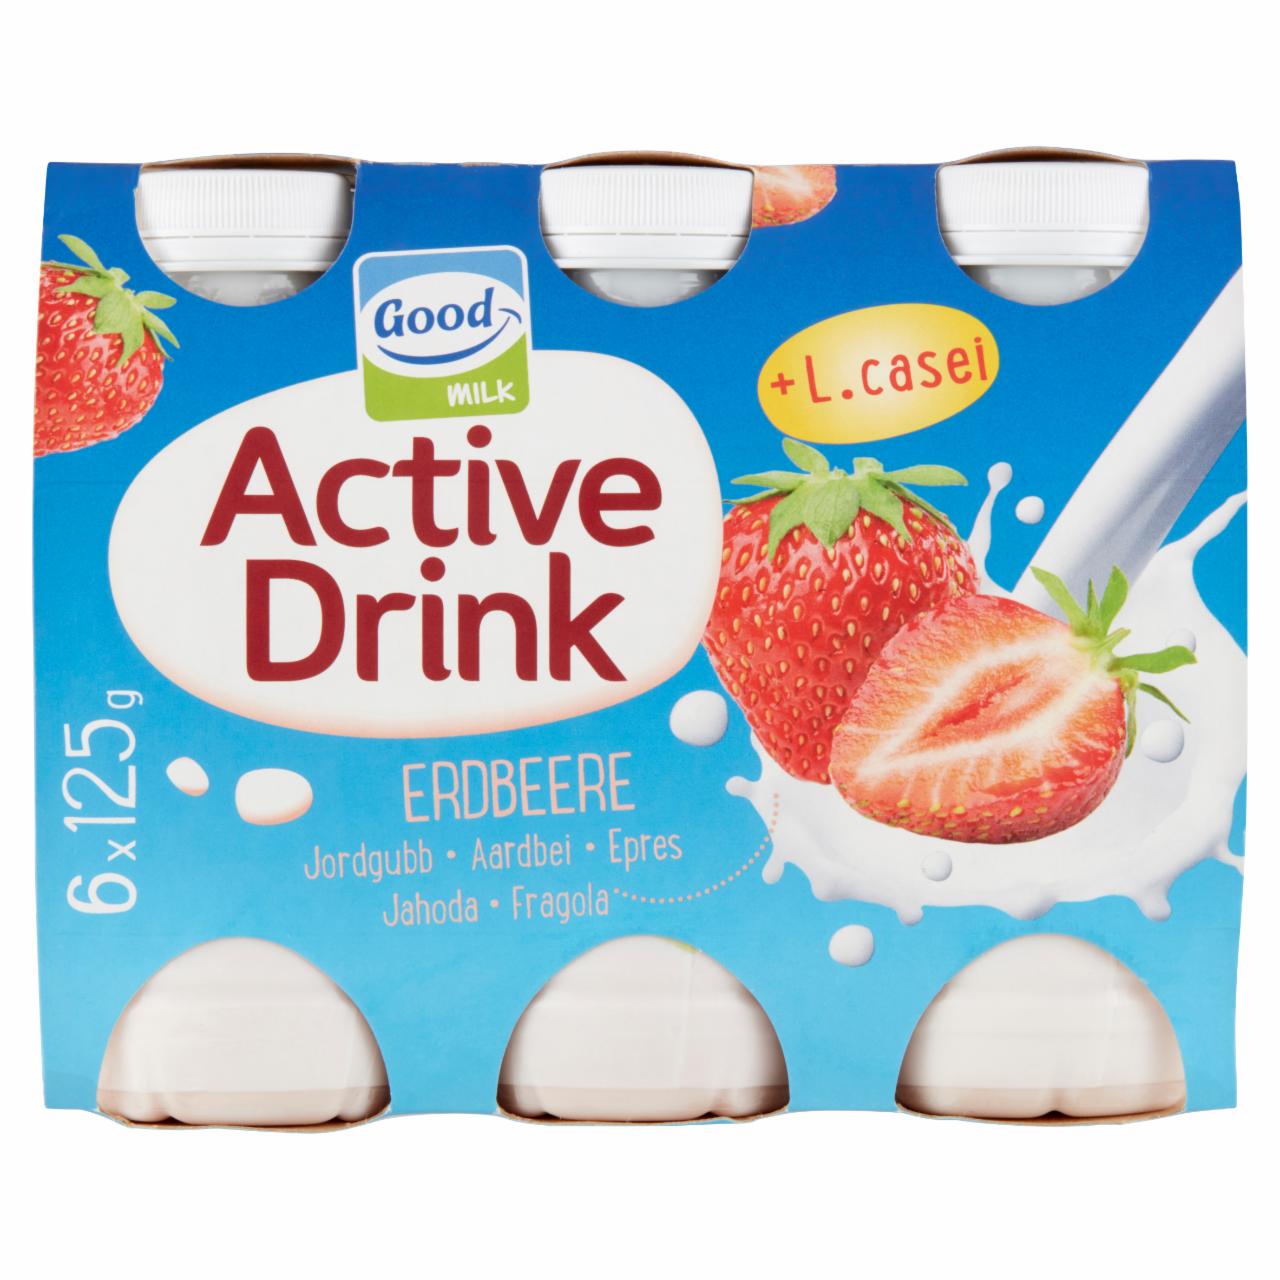 Képek - Good Milk Active Drink epres zsírszegény joghurtital 6 x 125 g (750 g)